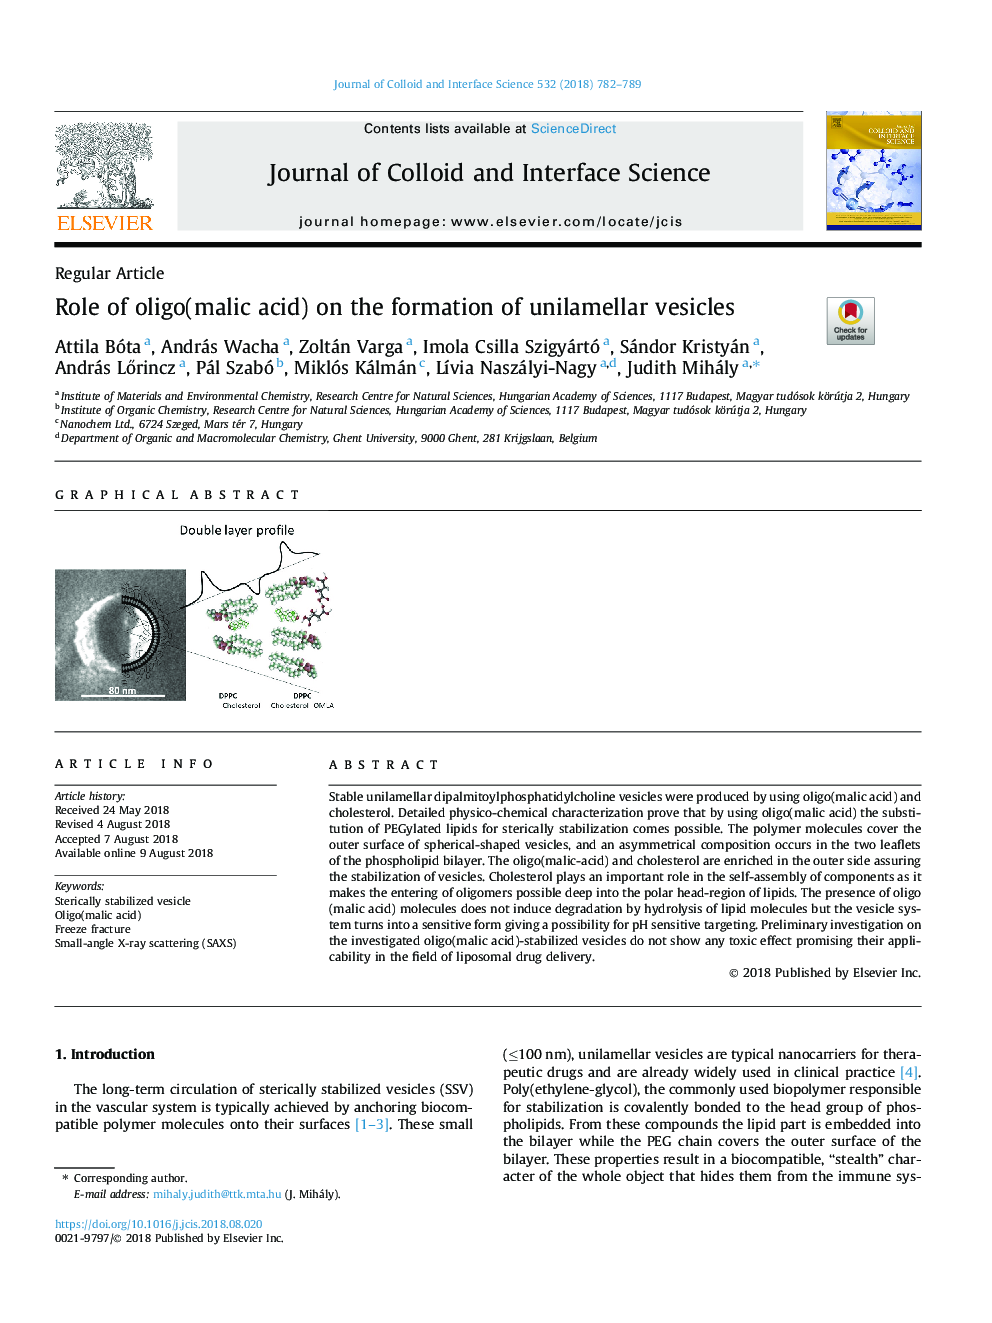 Role of oligo(malic acid) on the formation of unilamellar vesicles